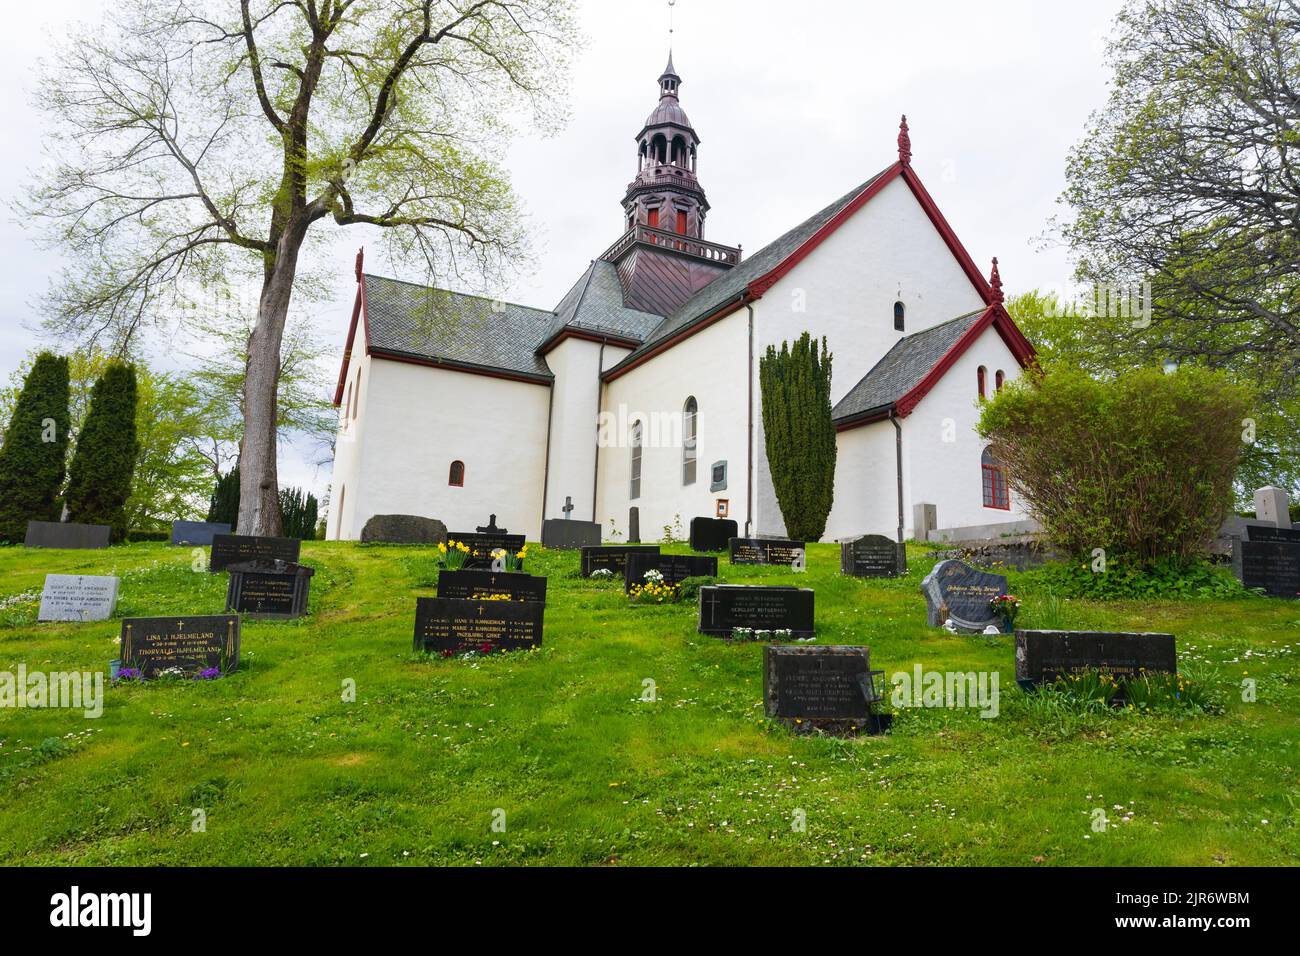 Eglise Borgund, Kyrkje et kyrkjegard, Sunnmøre, Alesund, Norvège Banque D'Images